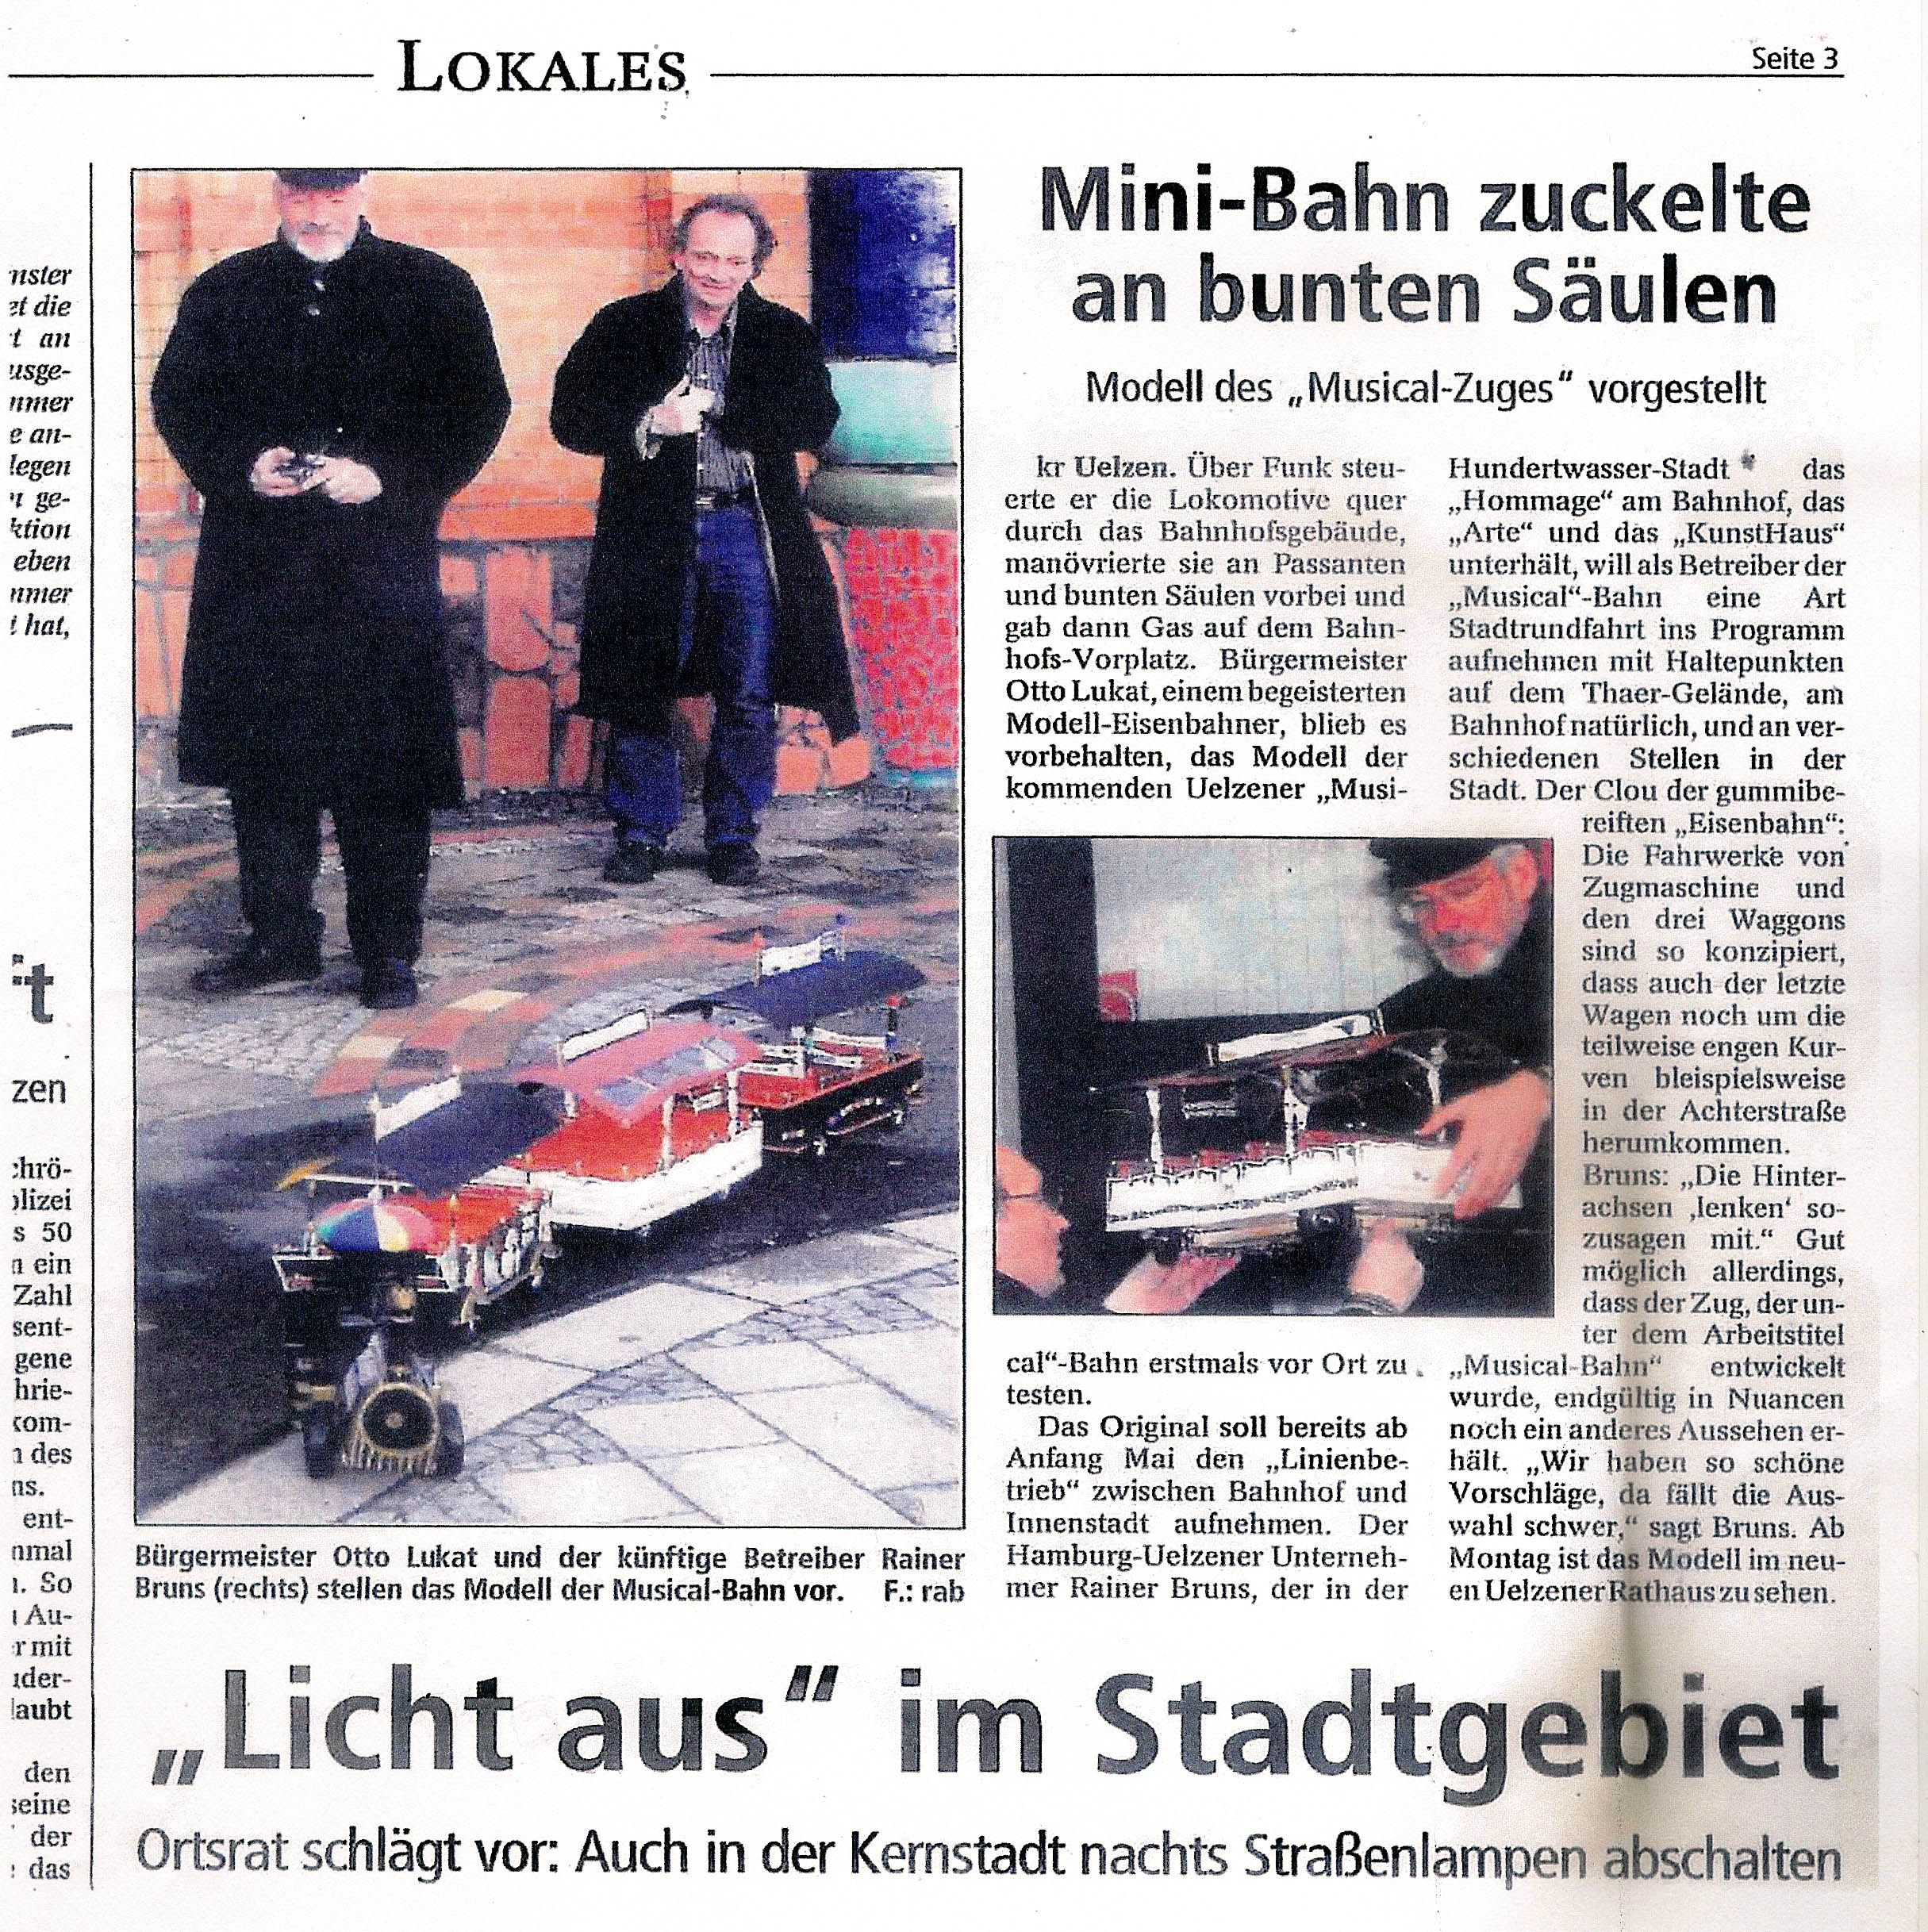 Allgemeine Zeitung Nr. 35 vom 11.2.2004, Seite 3